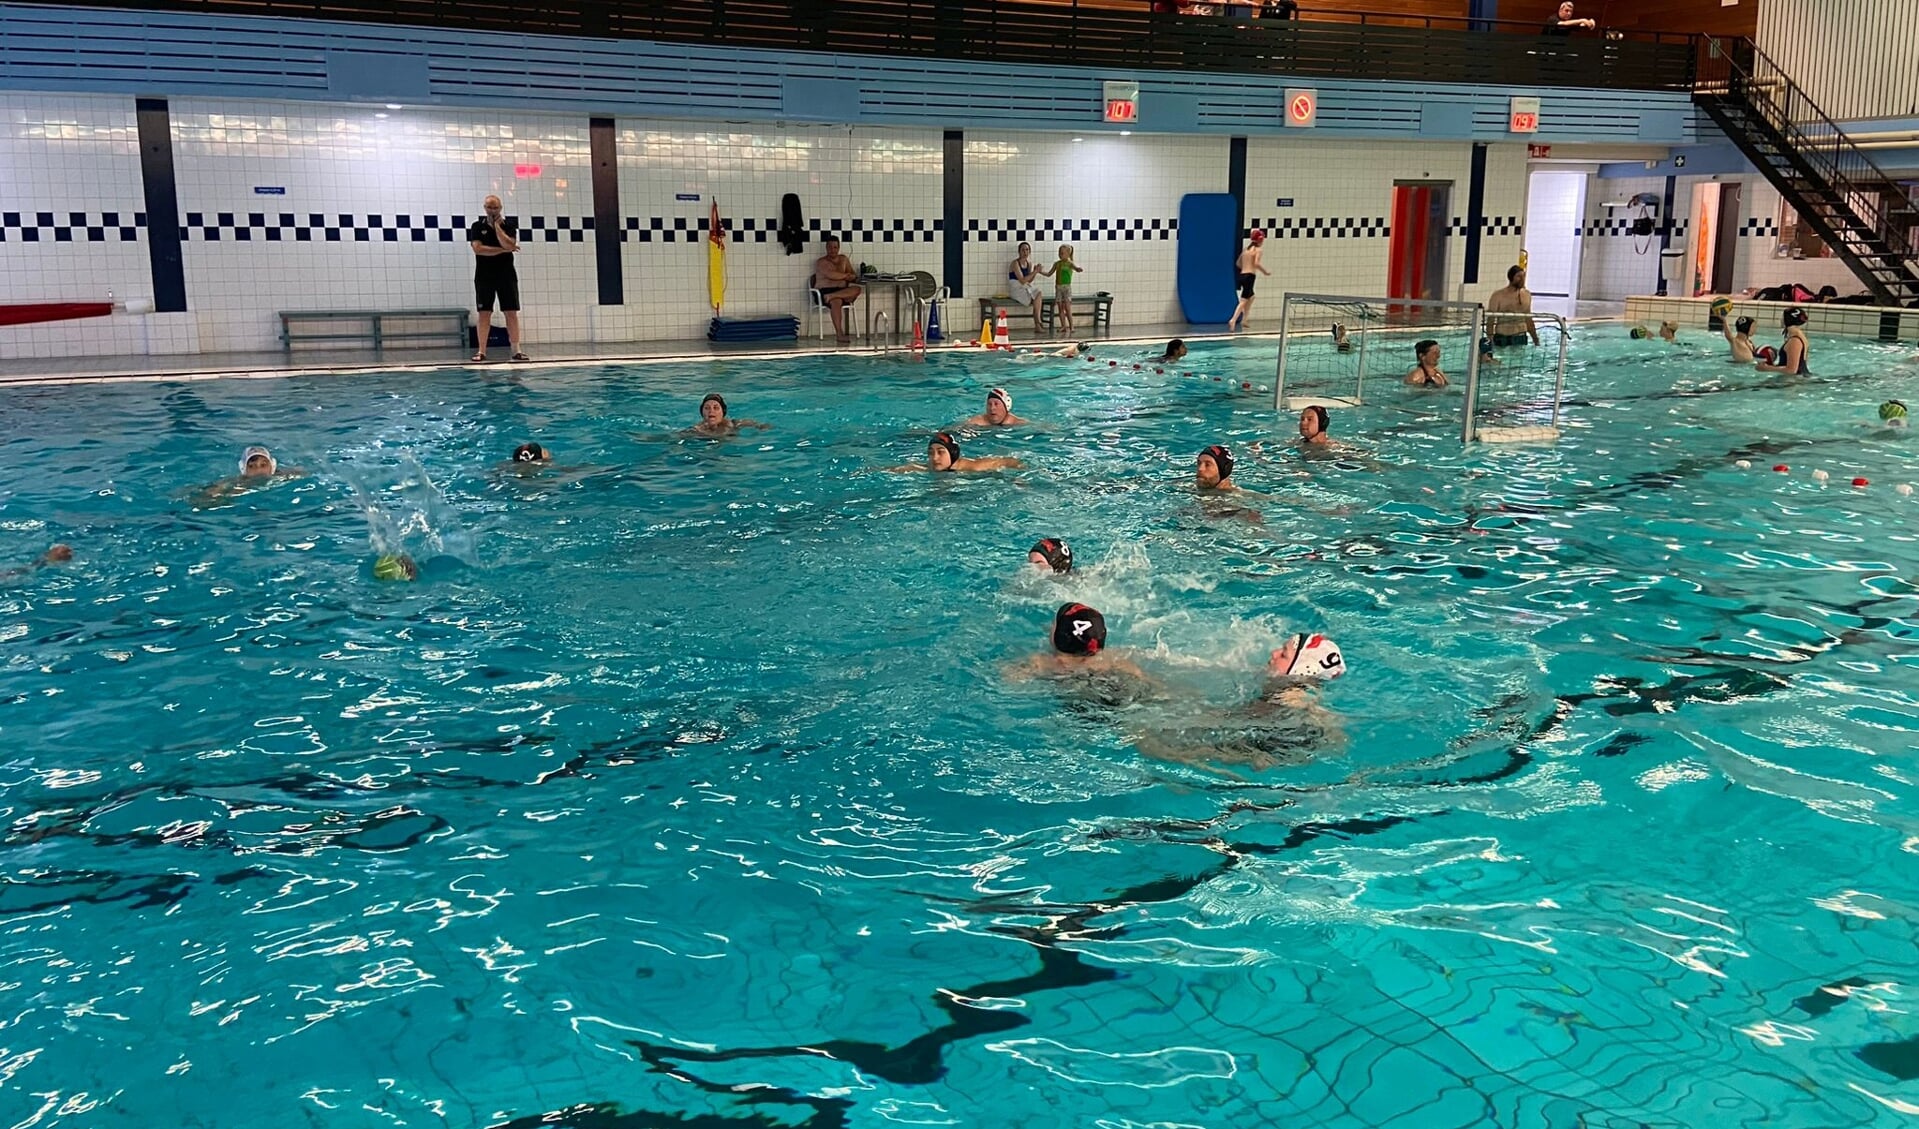 Het zwembad lag vol en er waren maar liefst 7 teams om wedstrijden mee te spelen. 